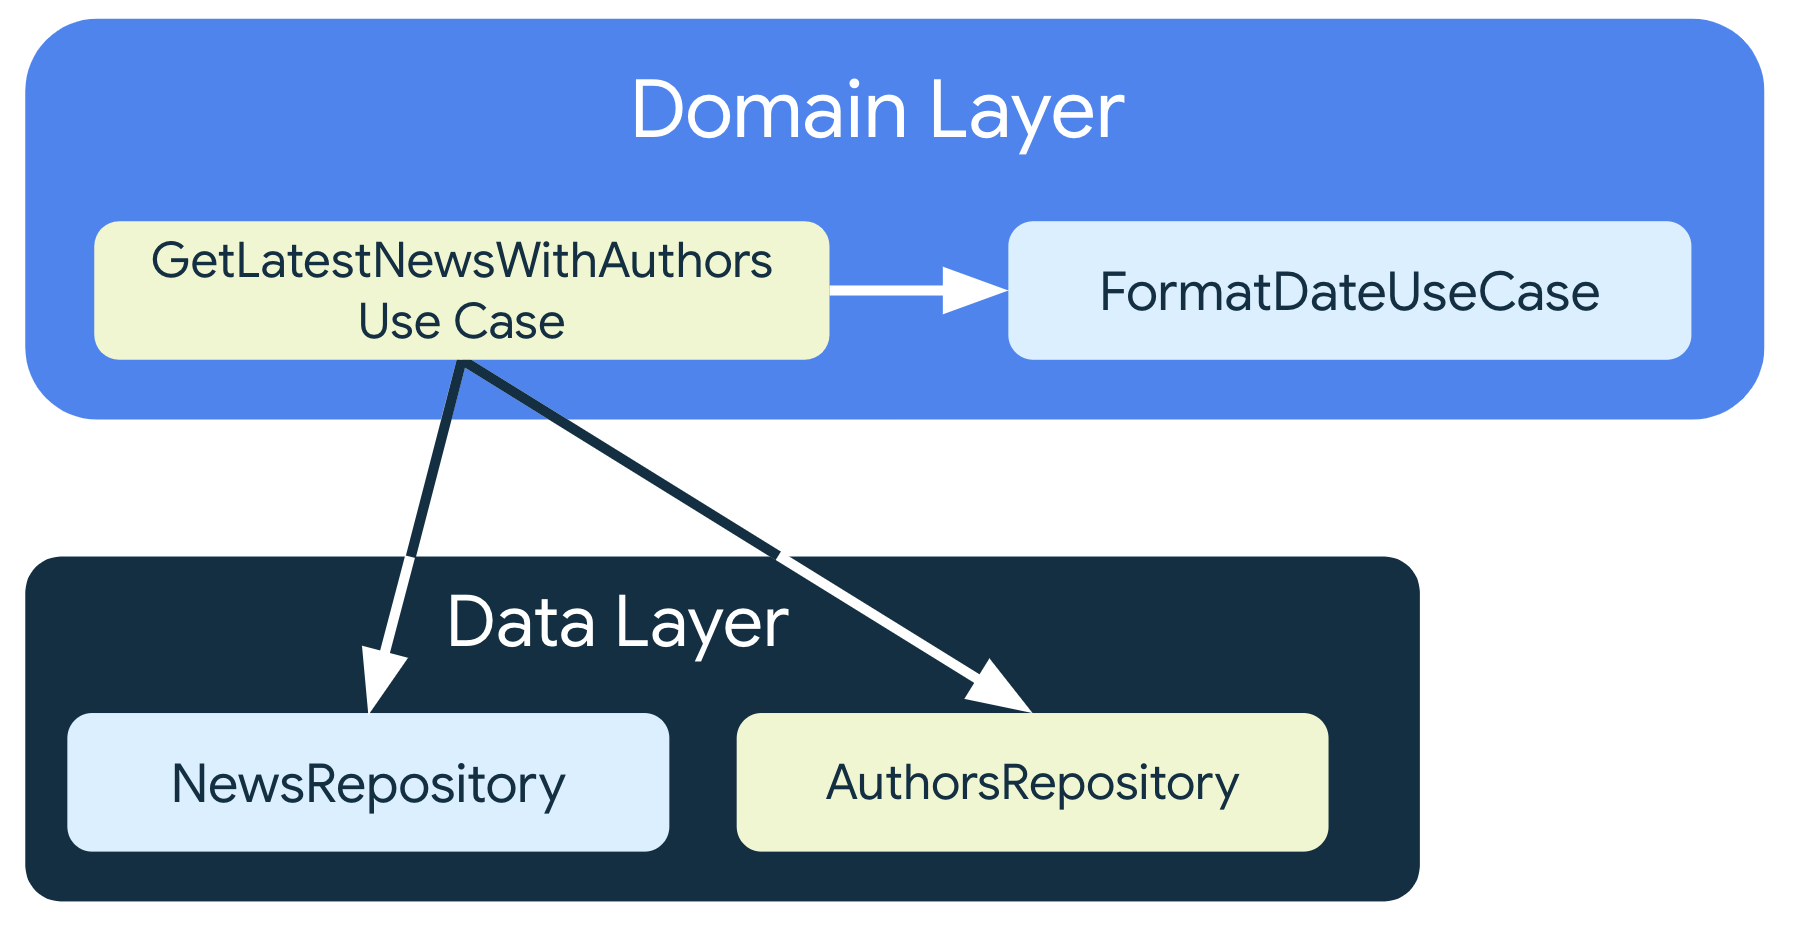 Metoda GetLastNewsWithAuthorsUseCase zależy od klas repozytorium z warstwy danych, ale także od klasy FormatDataUseCase, czyli innej klasy przypadku użycia, która również znajduje się w warstwie domeny.